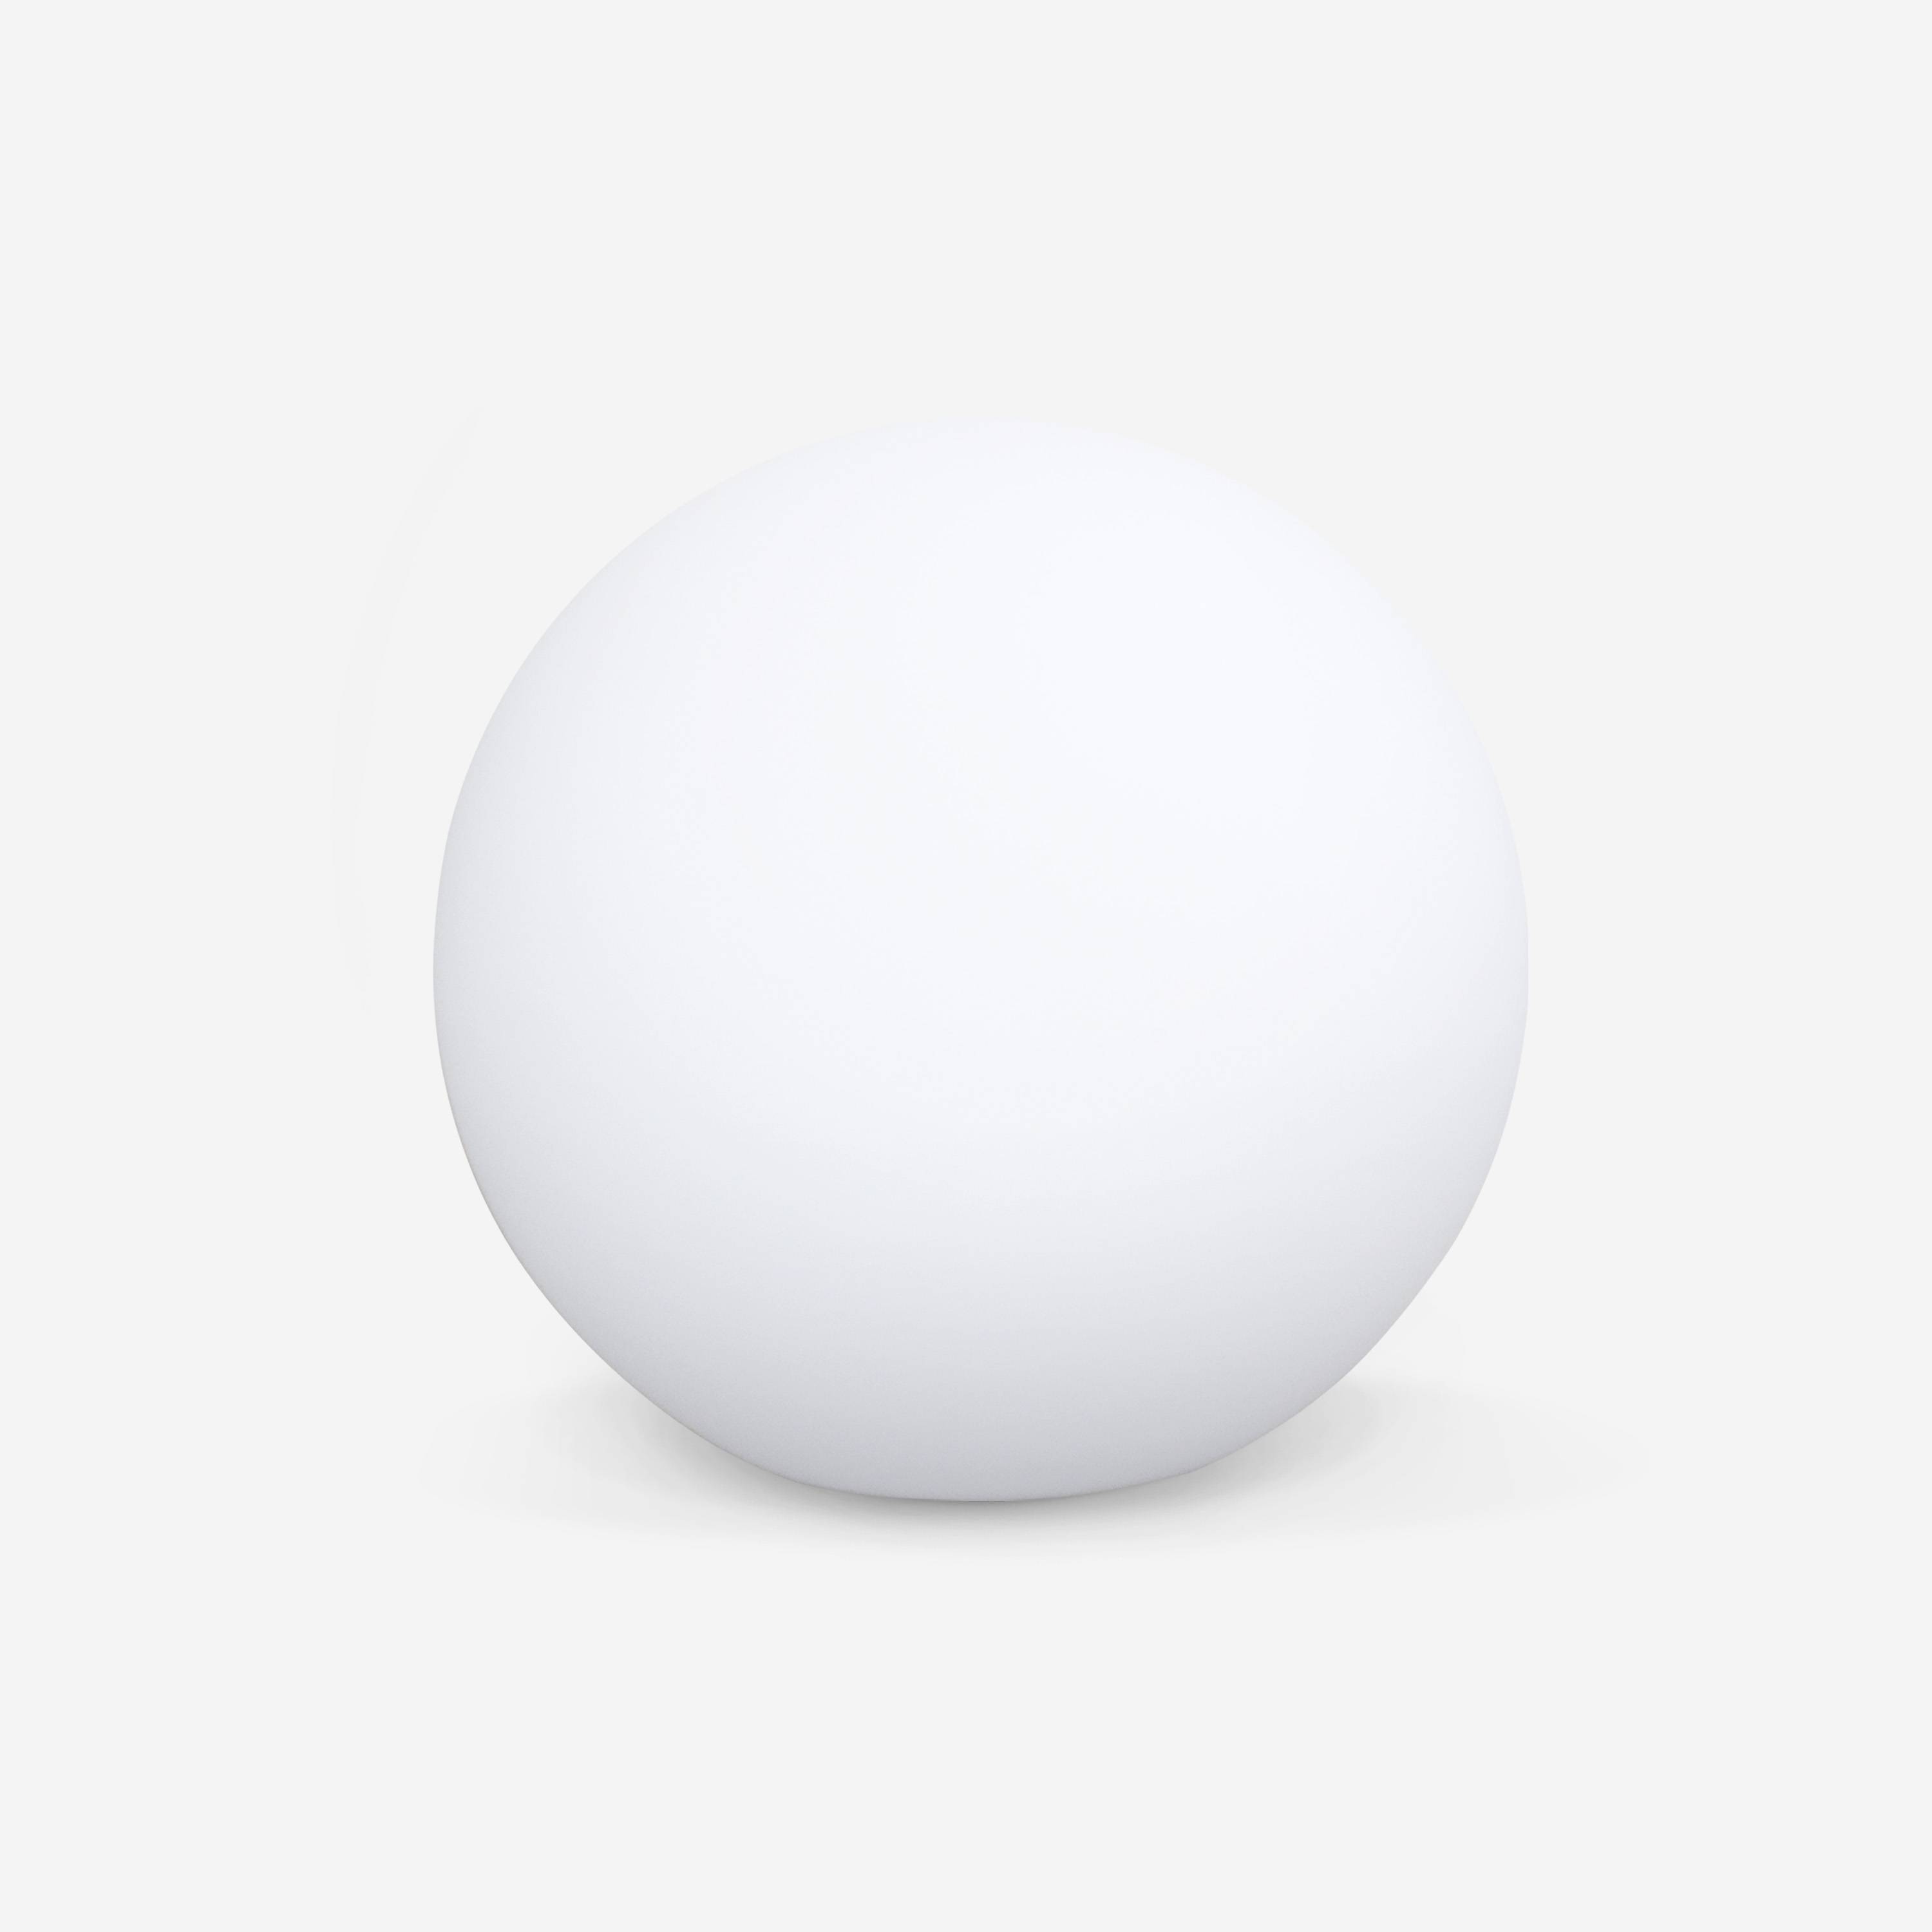 LED Bollamp 40cm – Decoratieve lichtbol, Ø40cm, warm wit, afstandsbediening Photo1